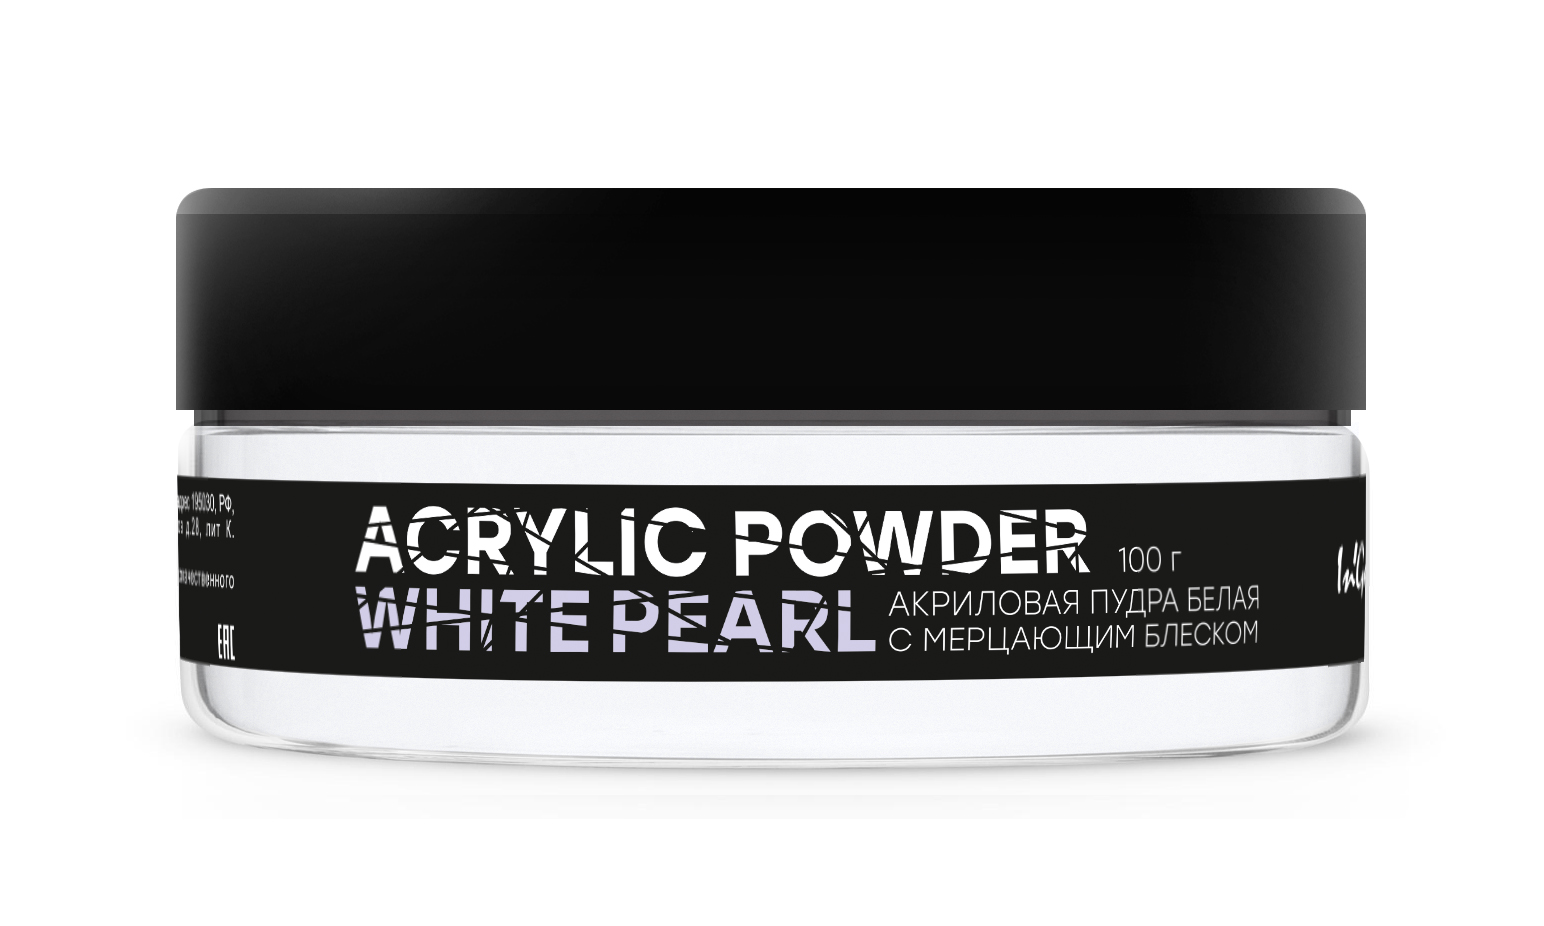 Акриловая пудра белая с мерцанием Acrylic Powder Classic White Pearl, 100 г белая пустыня white desert